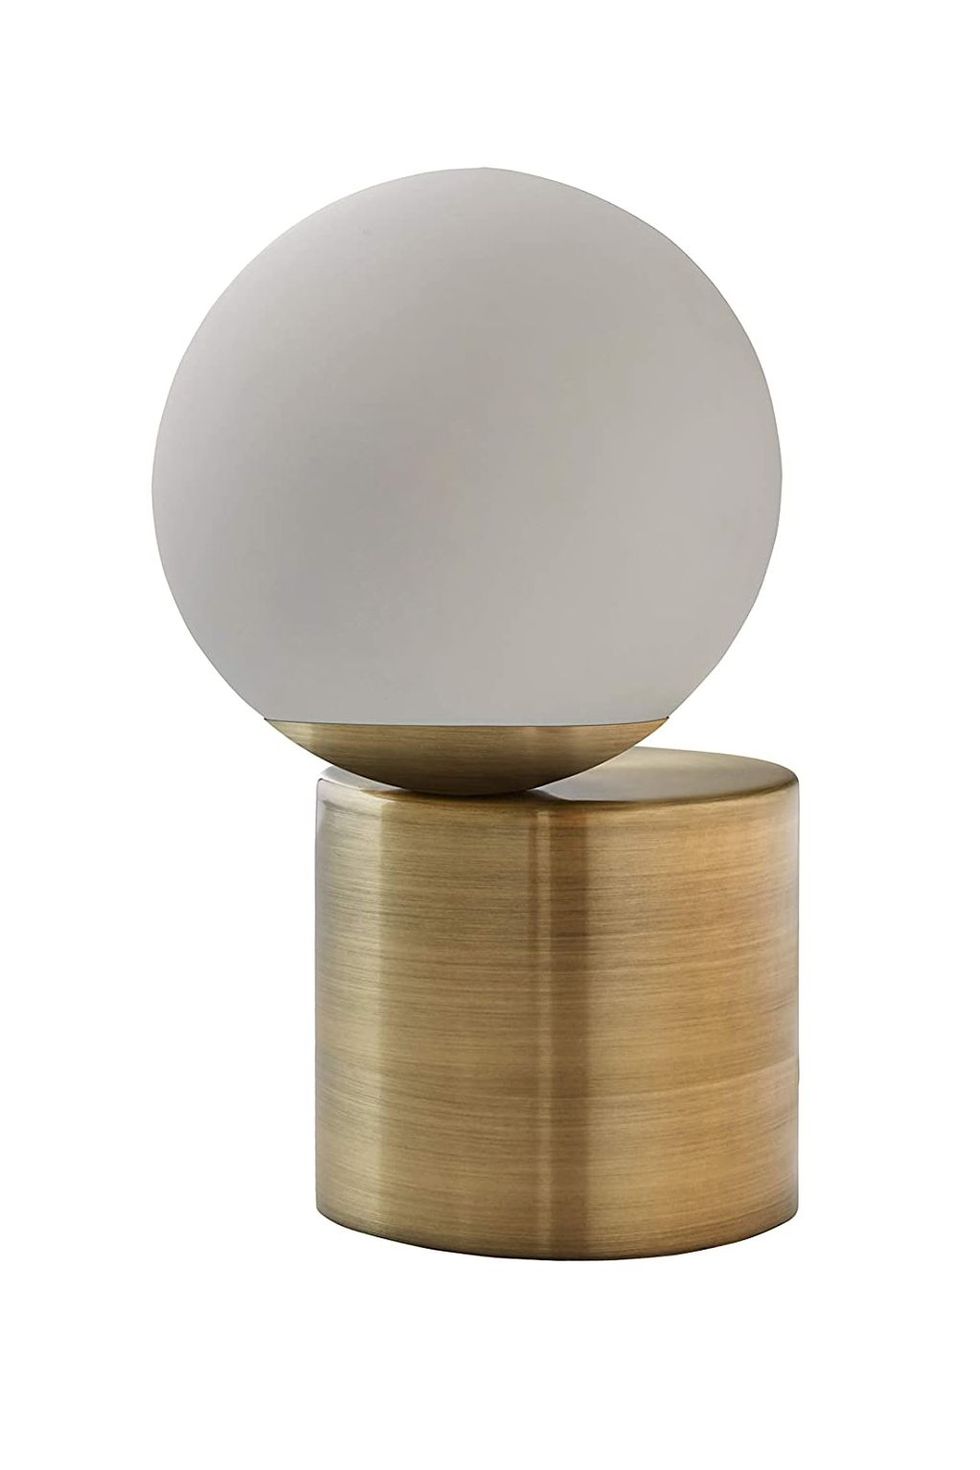 Modern Glass Globe Living Room Table Desk Lamp